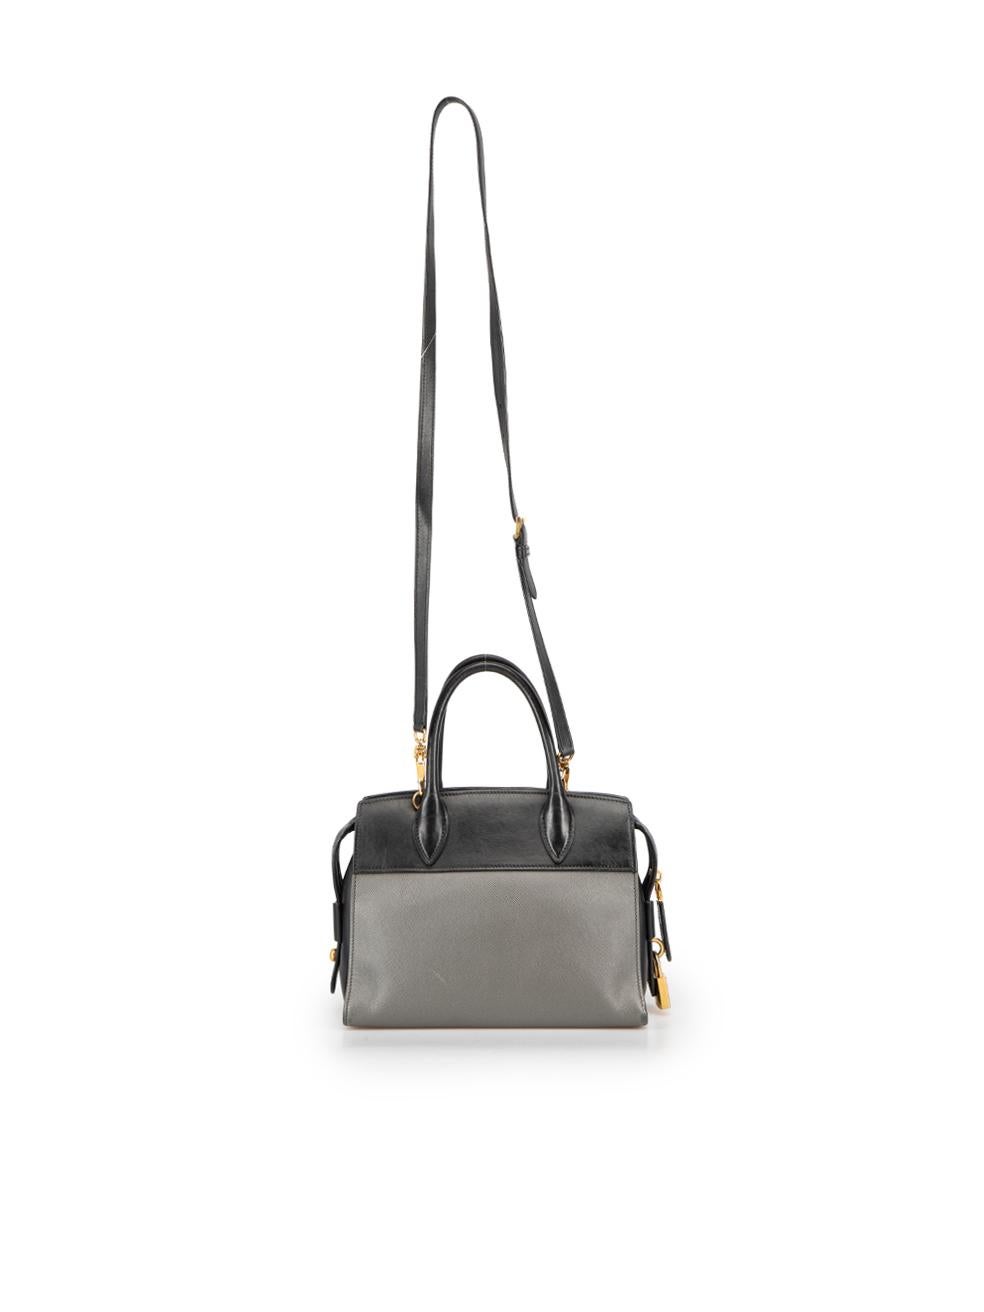 Prada Black Leather Esplanade Handbag In Good Condition For Sale In London, GB